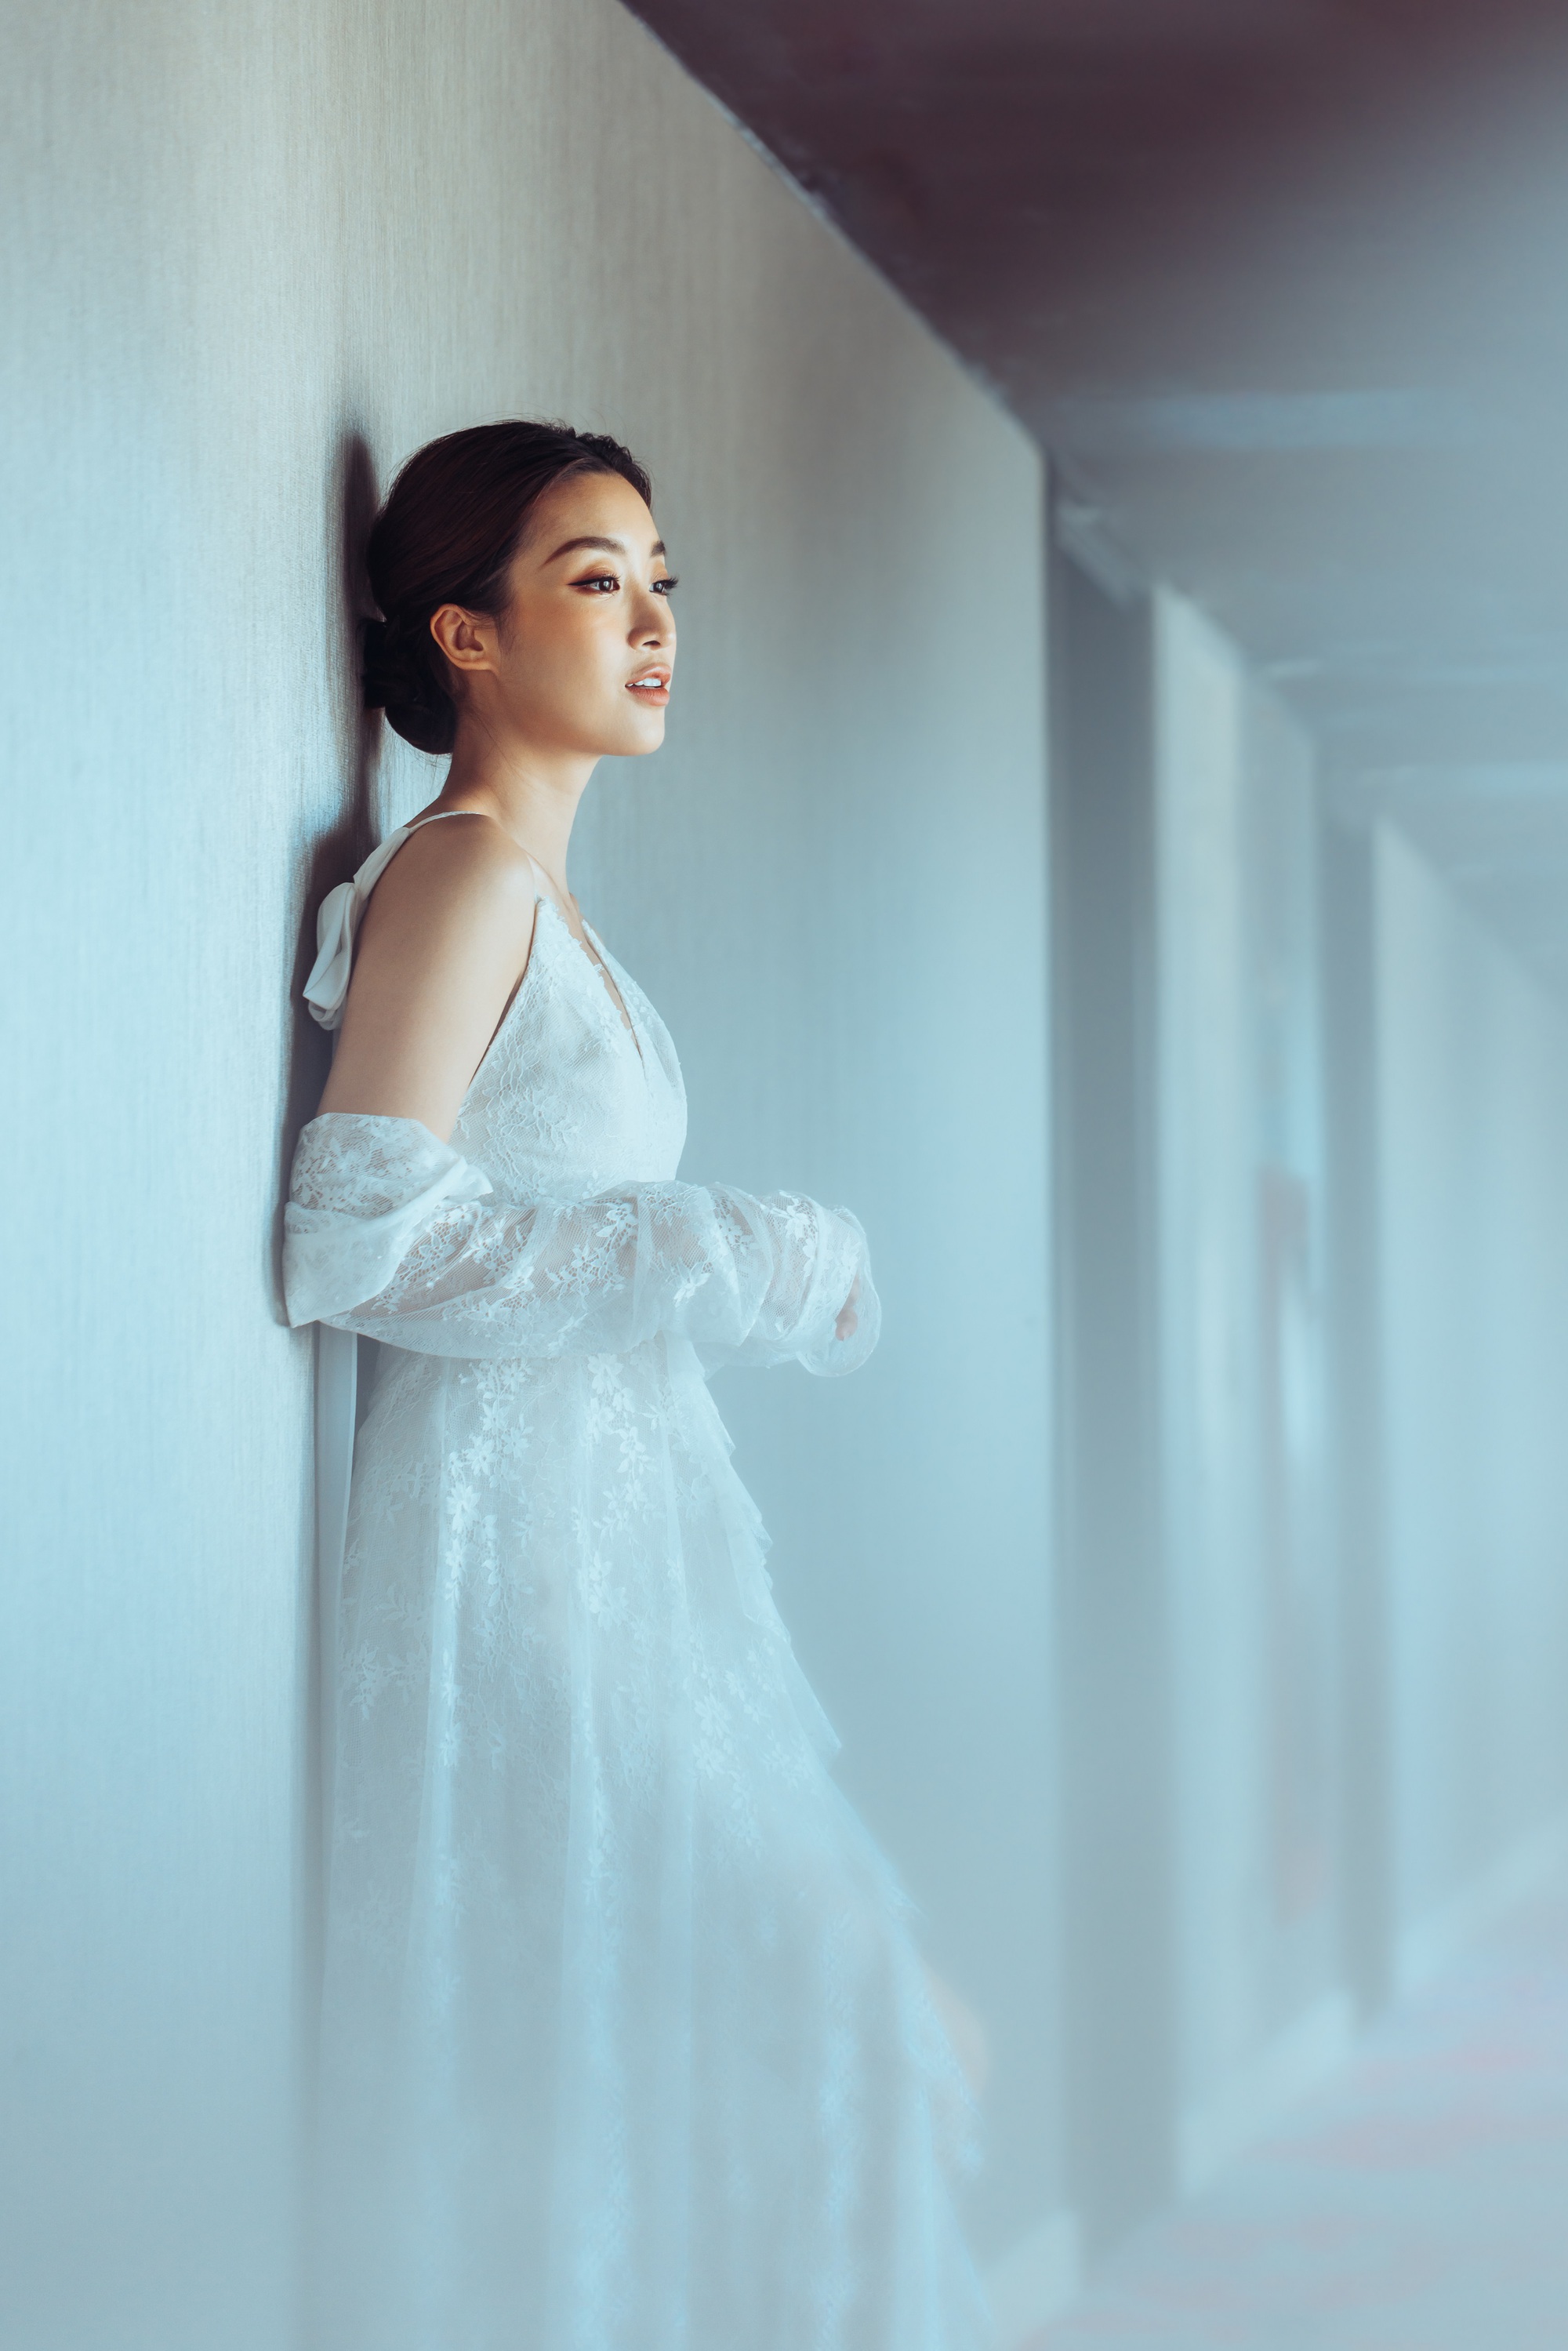 Hoa hậu Đỗ Mỹ Linh mặc váy cưới xinh đẹp khiến phụ nữ cũng phải rung động trước ngày lấy chồng - Ảnh 9.